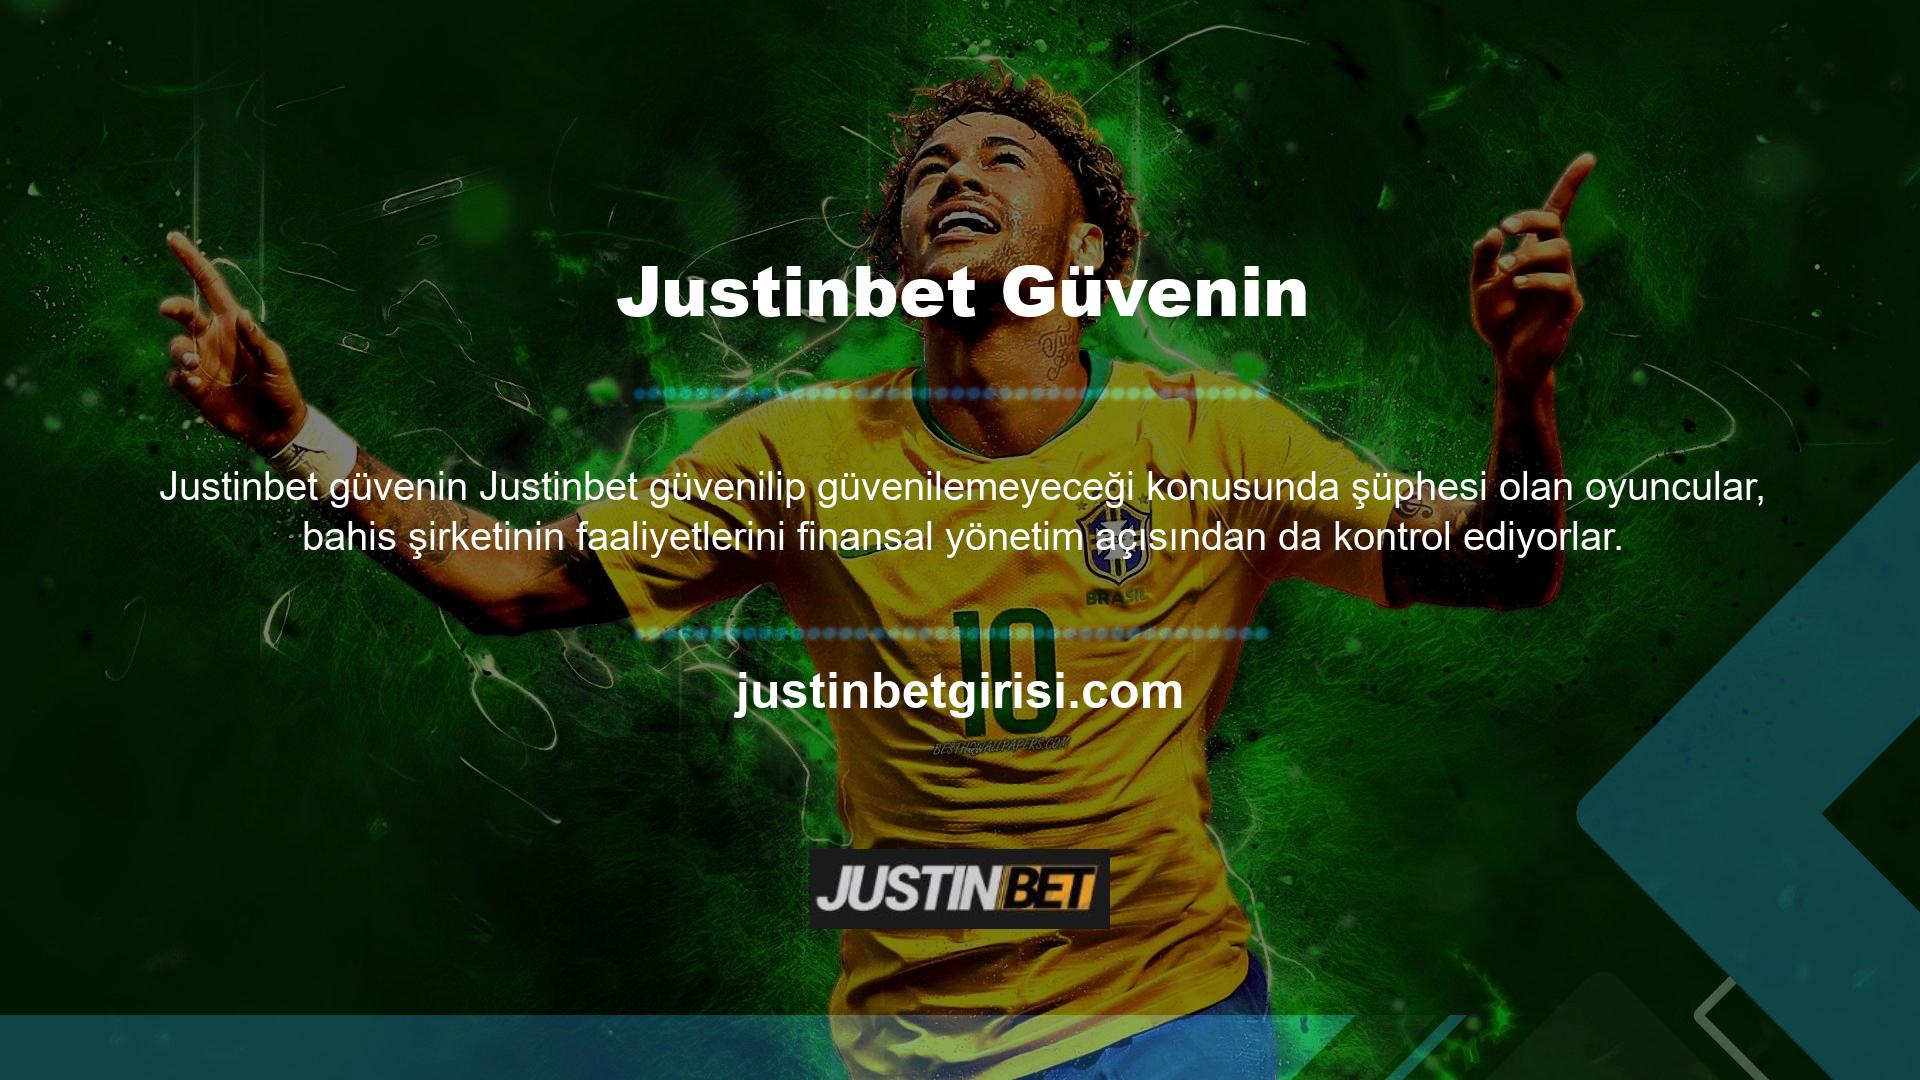 Justinbet Bahis Sitesi, oyuncuların programı çalıştırmak için çeşitli ödeme sistemlerini kullanmalarına olanak tanıyan lisanslı bir web sitesidir